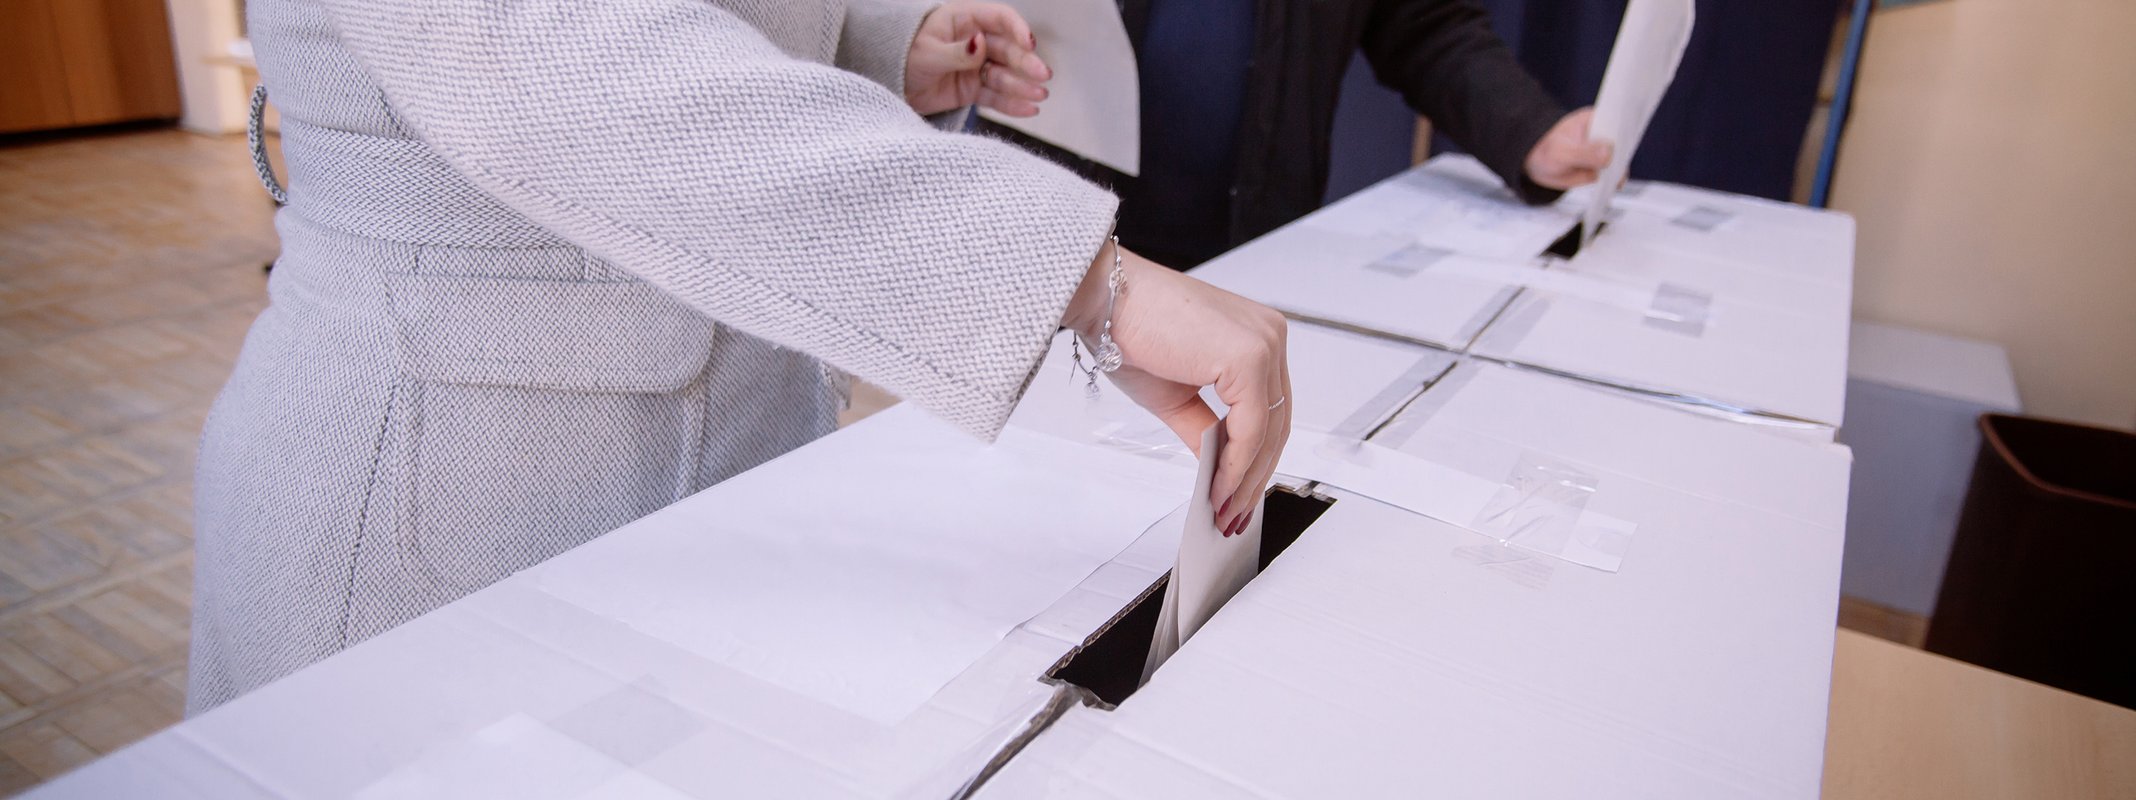 Υποβολή υποψηφίων για τις εκλογές ΕΚ στις 24 Απριλίου